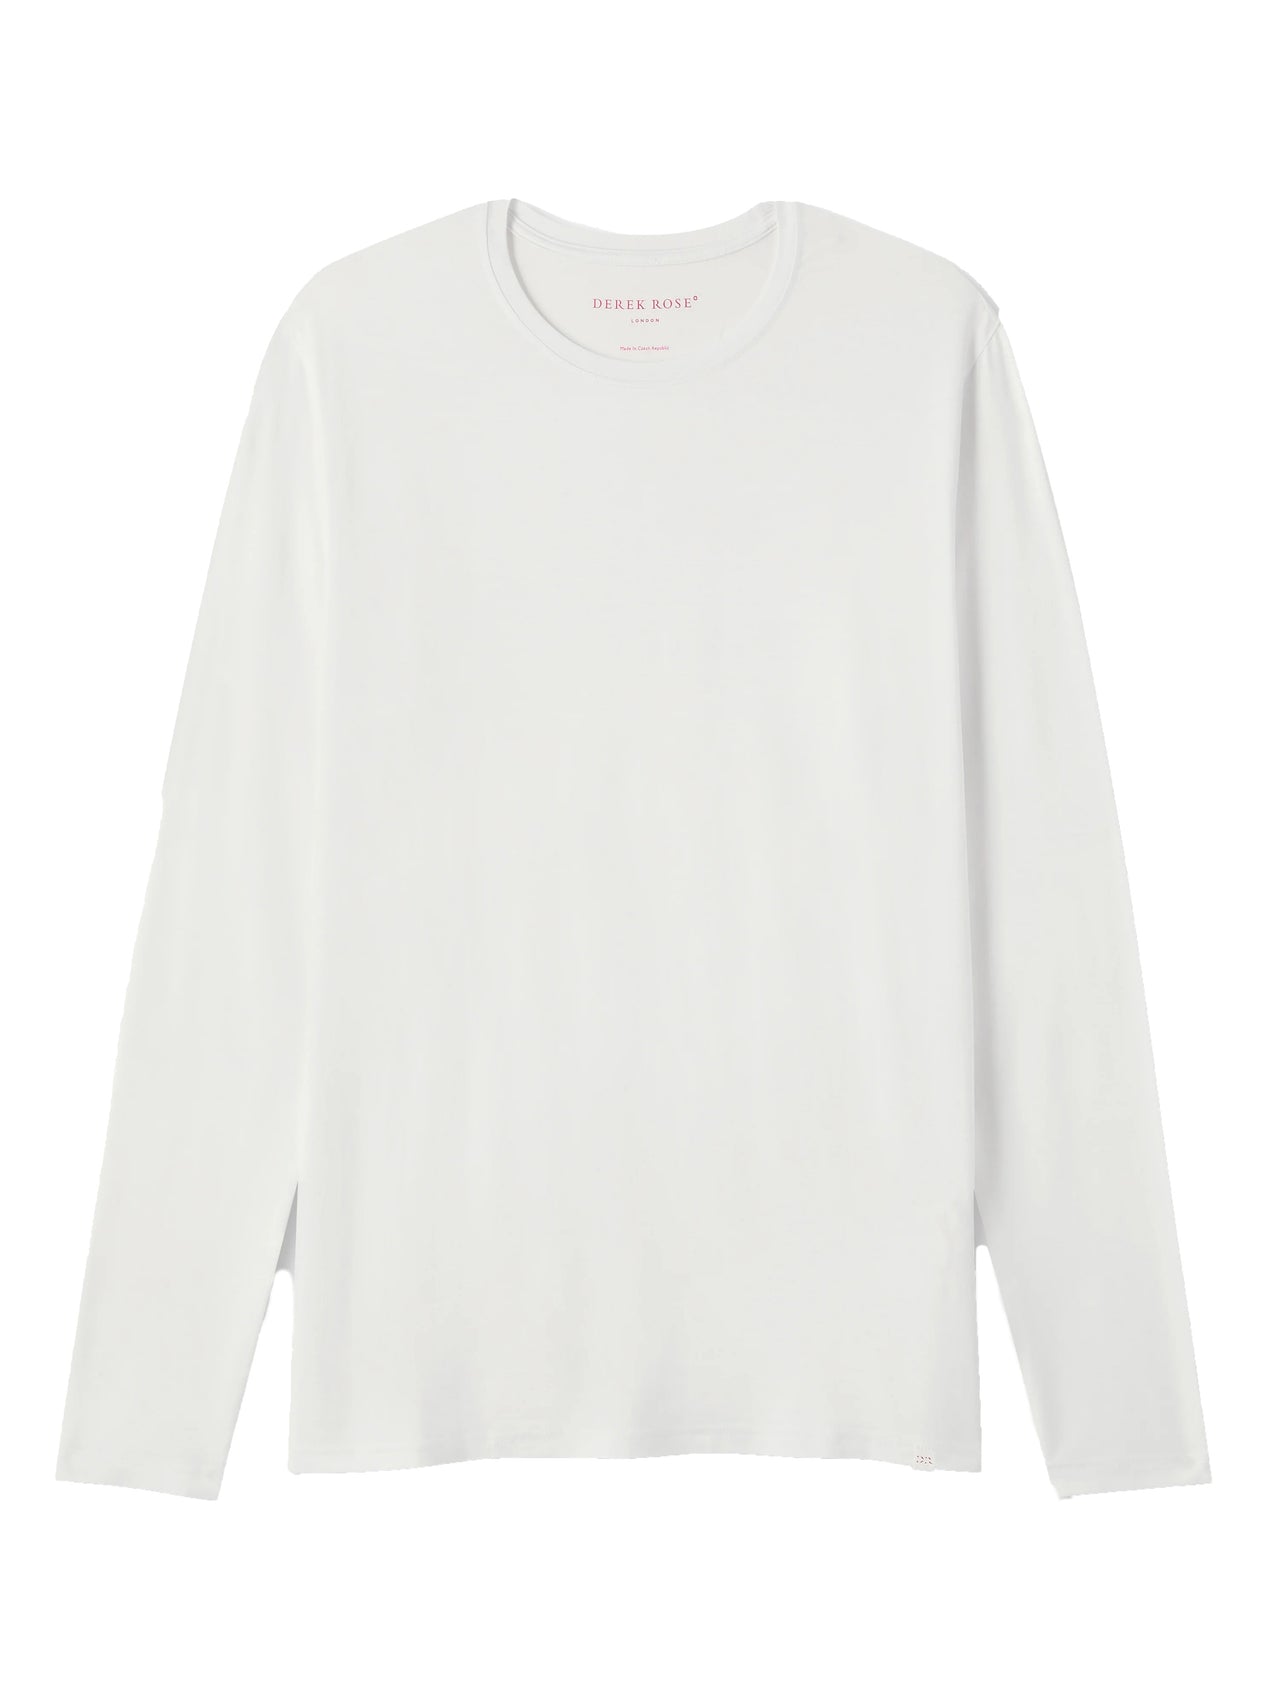 DEREK ROSE Basel Micro Modal Stretch Men's Long Sleeve T-Shirt WHITE